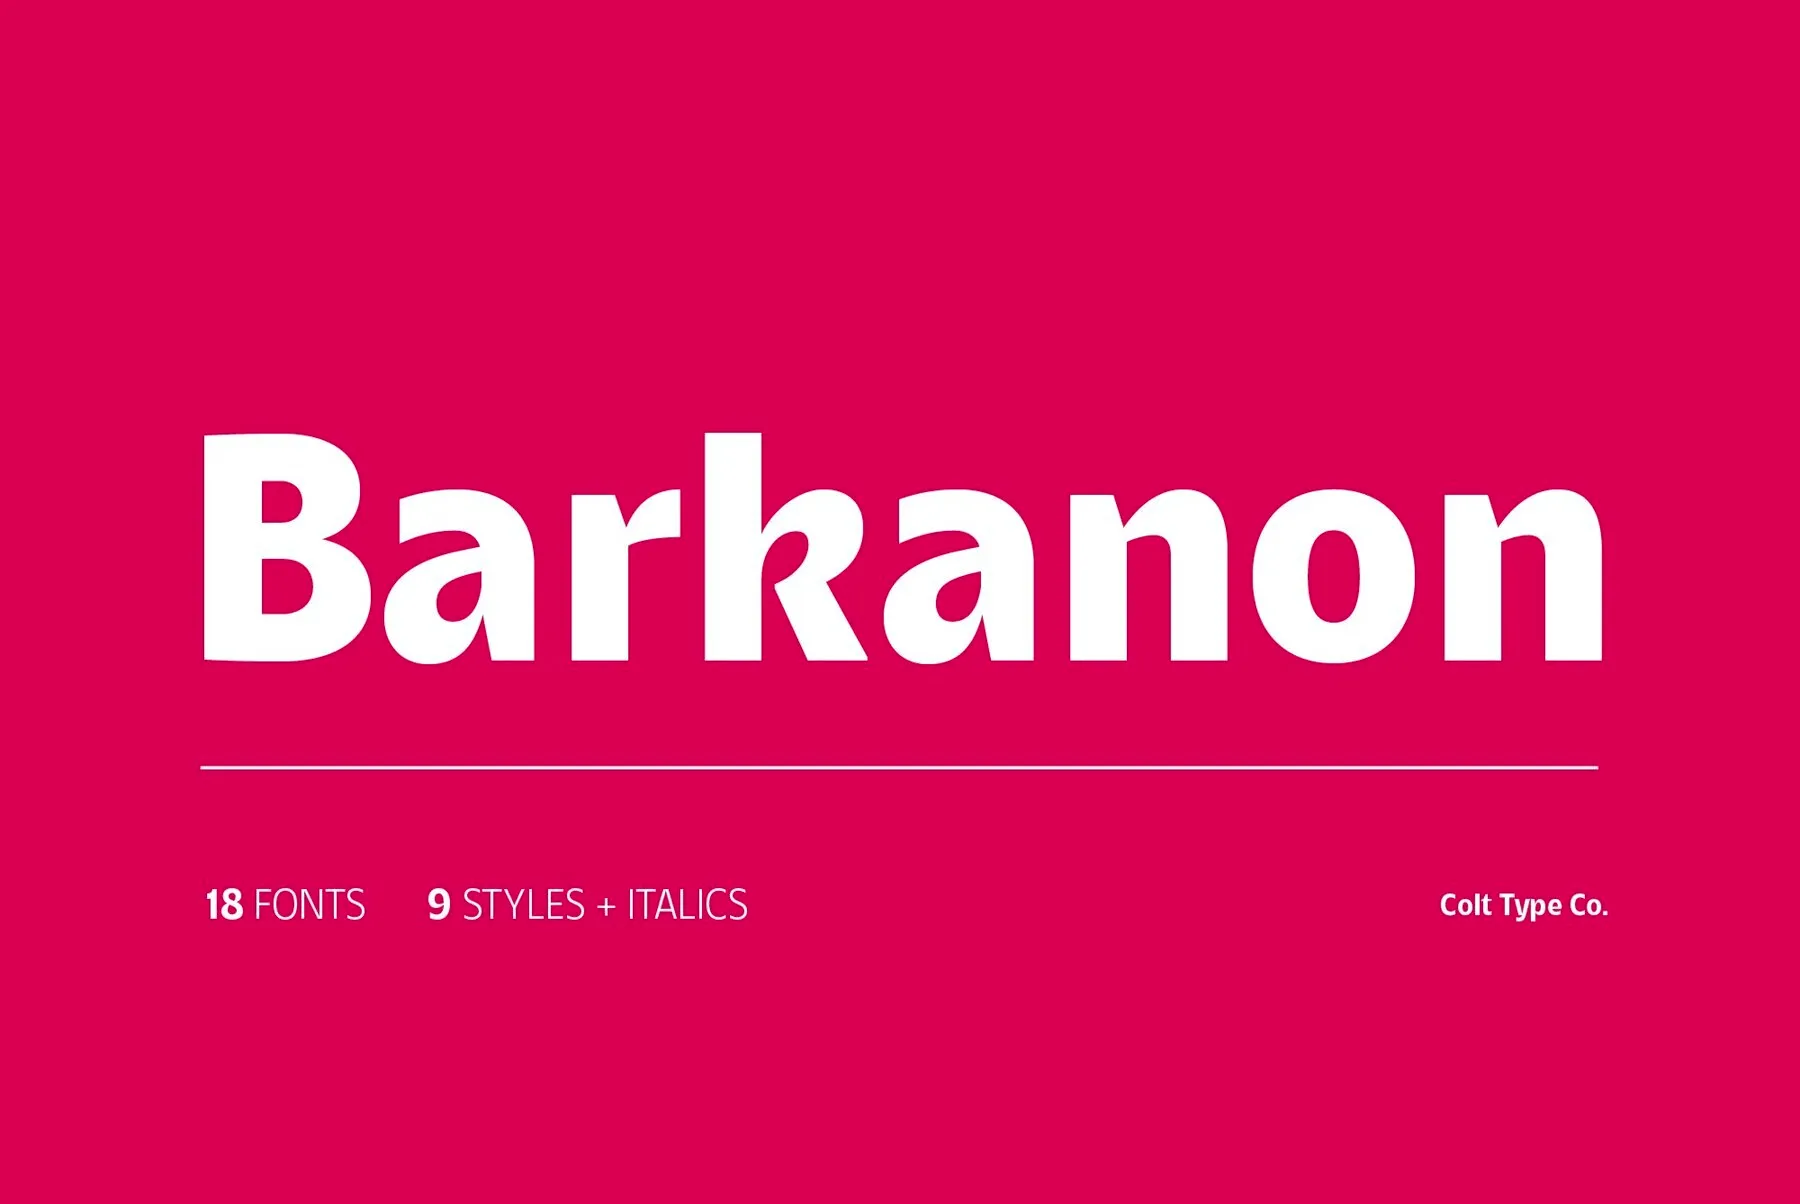 Barkanon